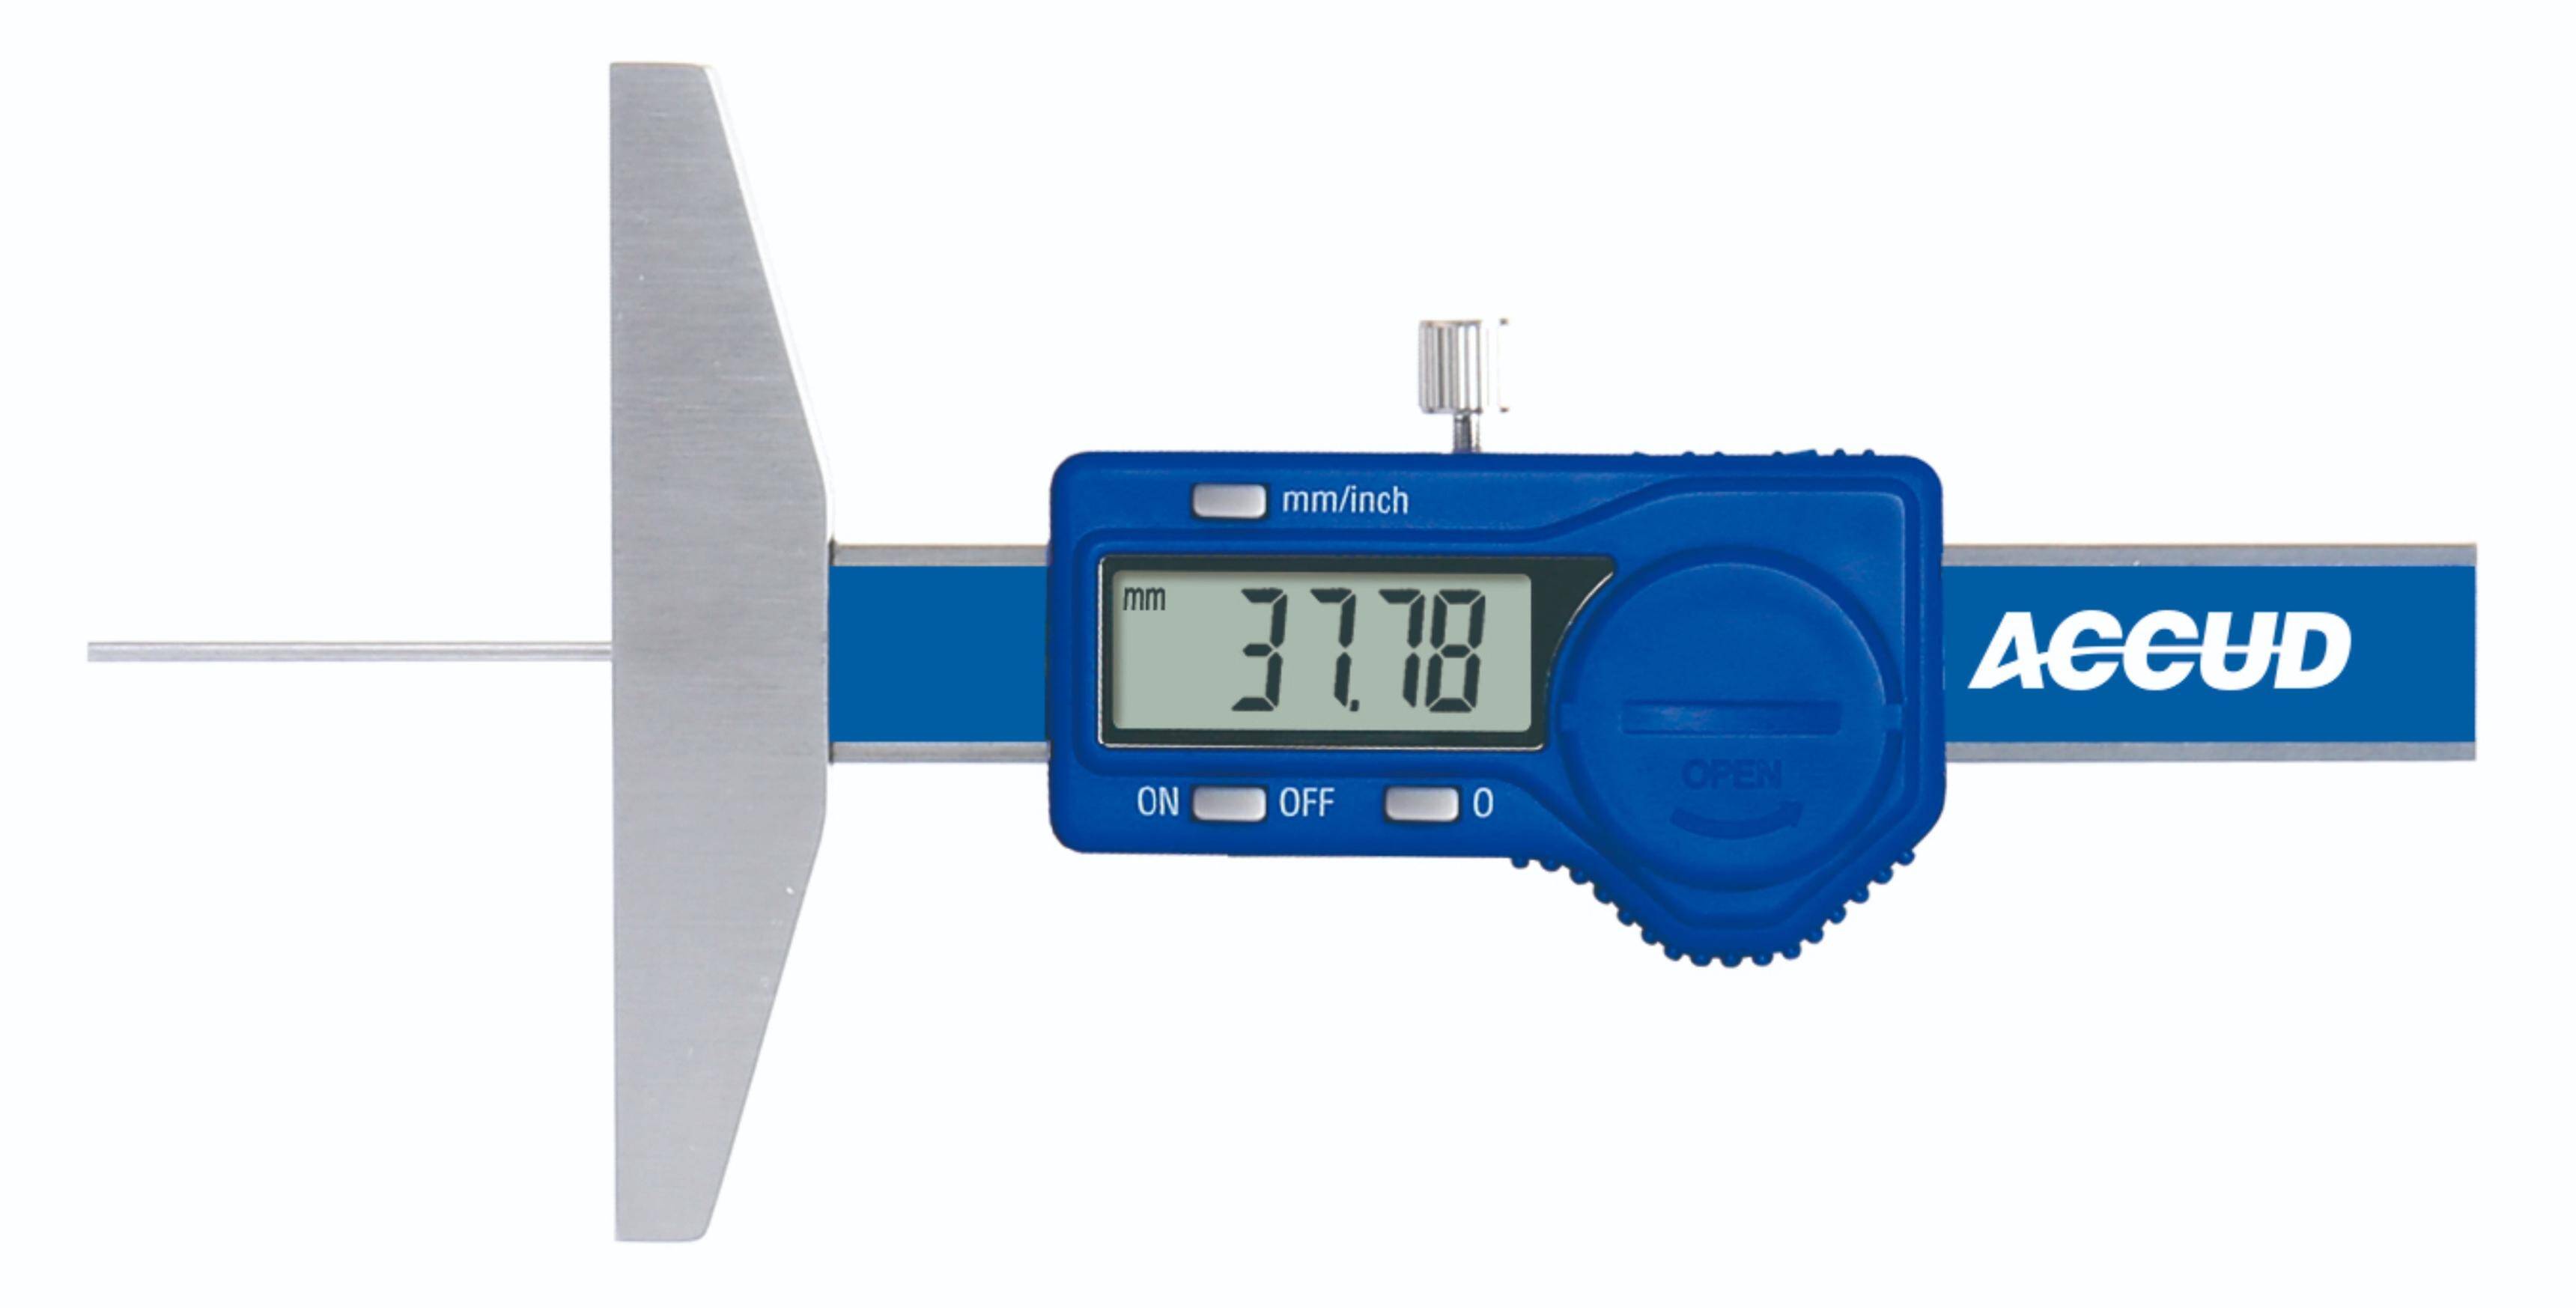 ACCUD głębokościomierz elektroniczny 50/0.01 mm z długim trzpieniem pomiarowym 194-002-11 (Zdjęcie 1)